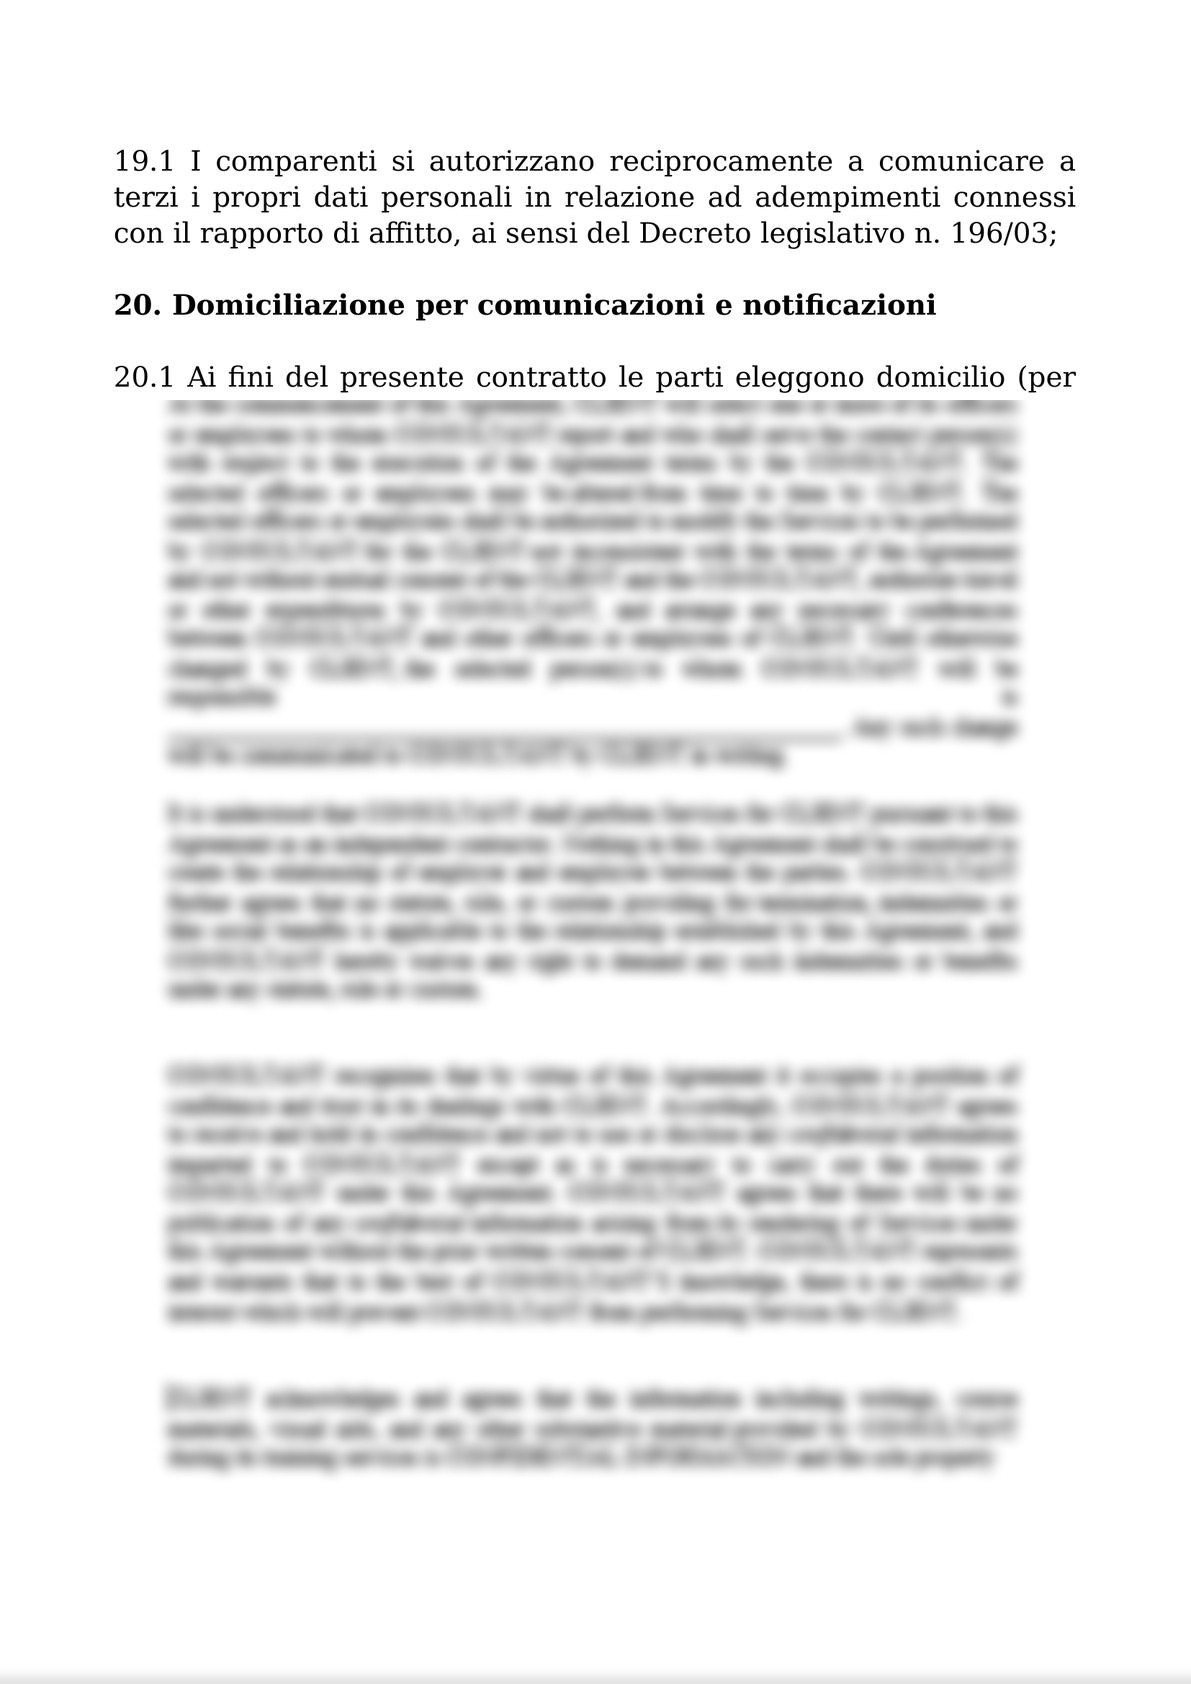 RENTAL AGREEMENT  FOR THE COMPANY AND BUSINESS UNITS / CONTRATTO DI AFFITTO DI AZIENDA O DI UN RAMO DI ESSA-9